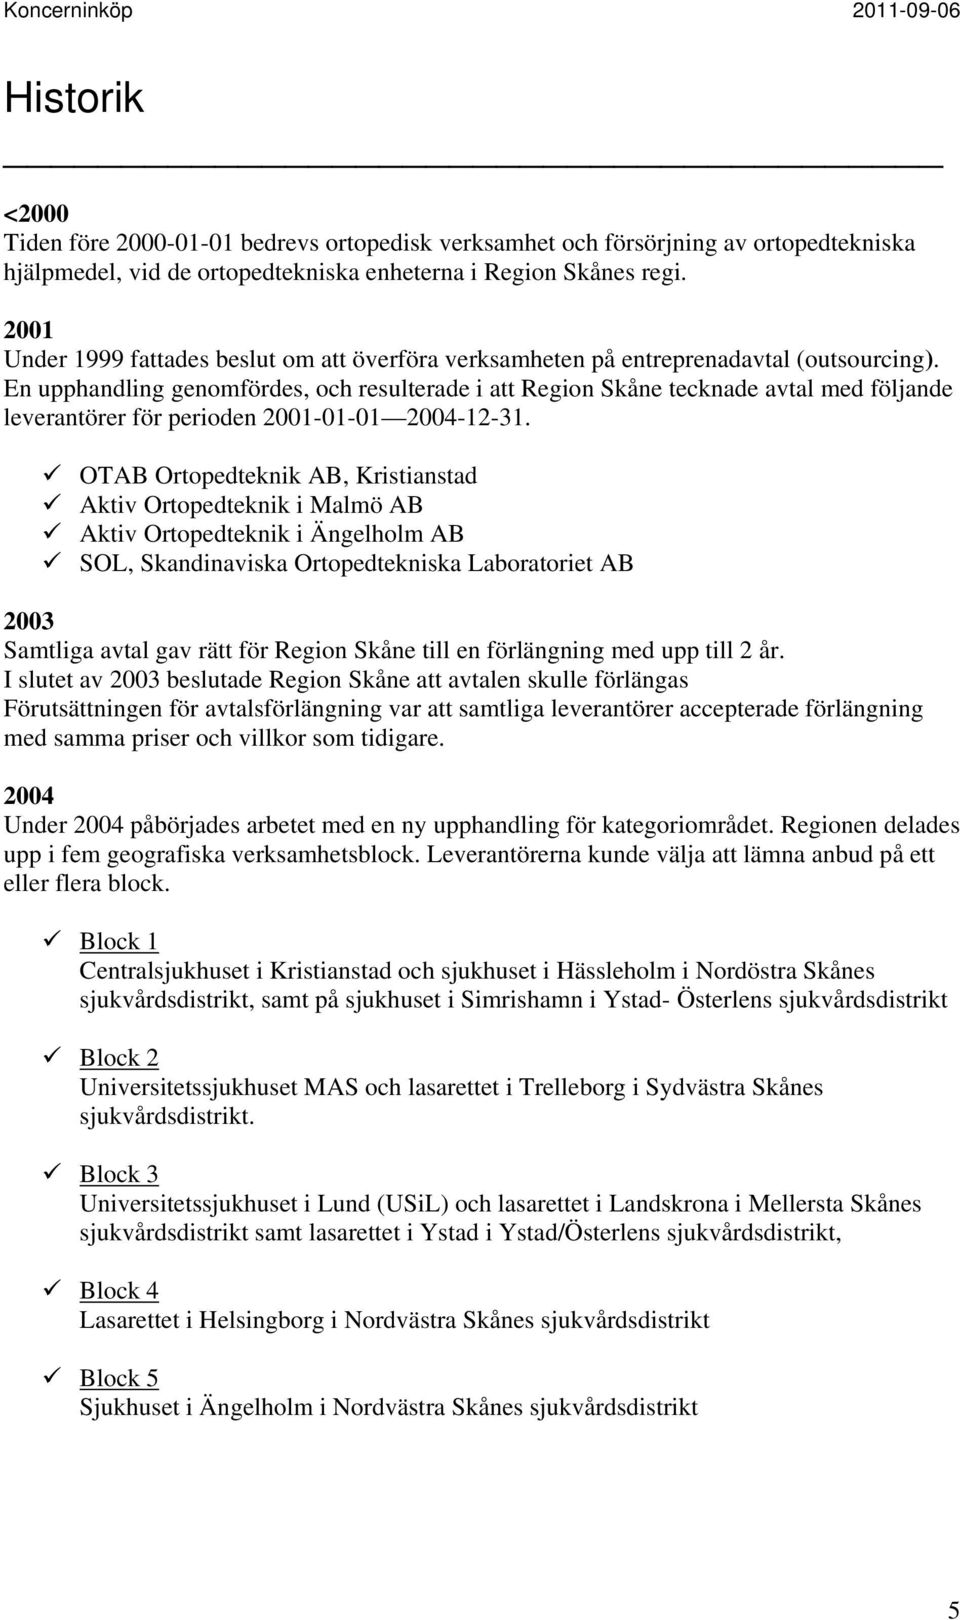 En upphandling genomfördes, och resulterade i att Region Skåne tecknade avtal med följande leverantörer för perioden 2001-01-01 2004-12-31.